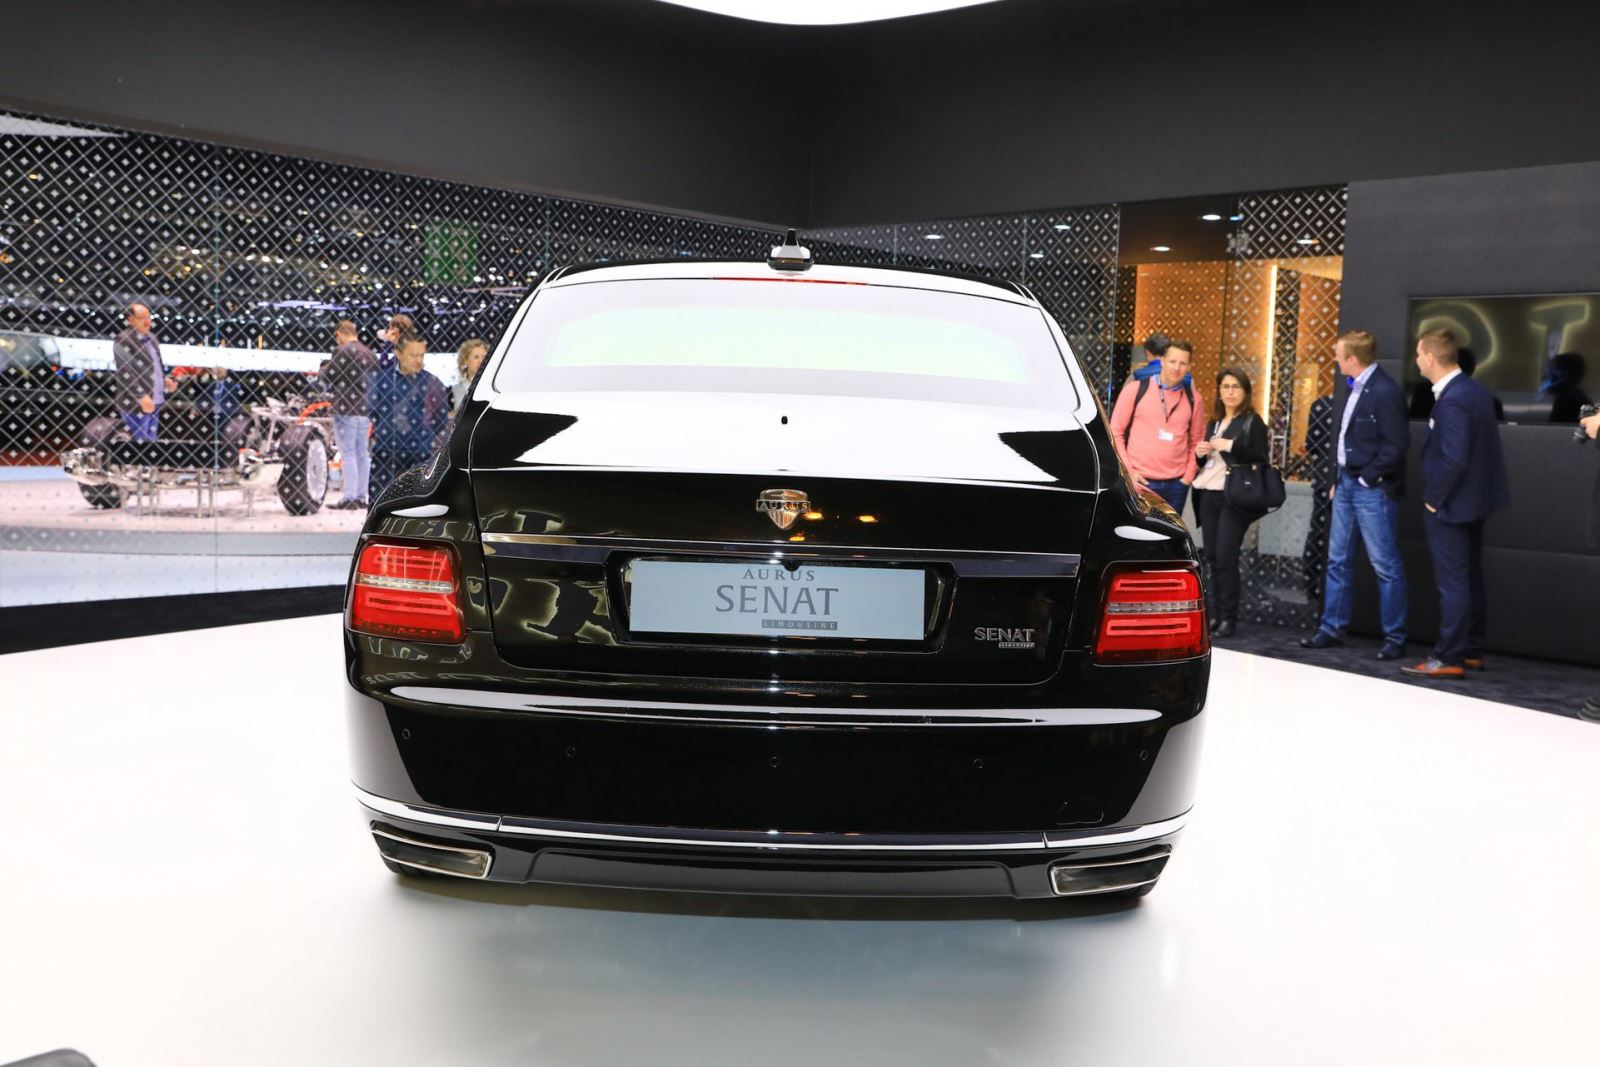 2 mẫu sedan và limousine của Aurus - thương hiệu được mệnh danh là "Rolls-Royce của nước Nga" đã chính thức trình diện khách hàng châu Âu tại triển lãm Geneva và nhận được không ít lời tán dương. Rolls-Royce hay Bentley cũng phải dè chừng. 4